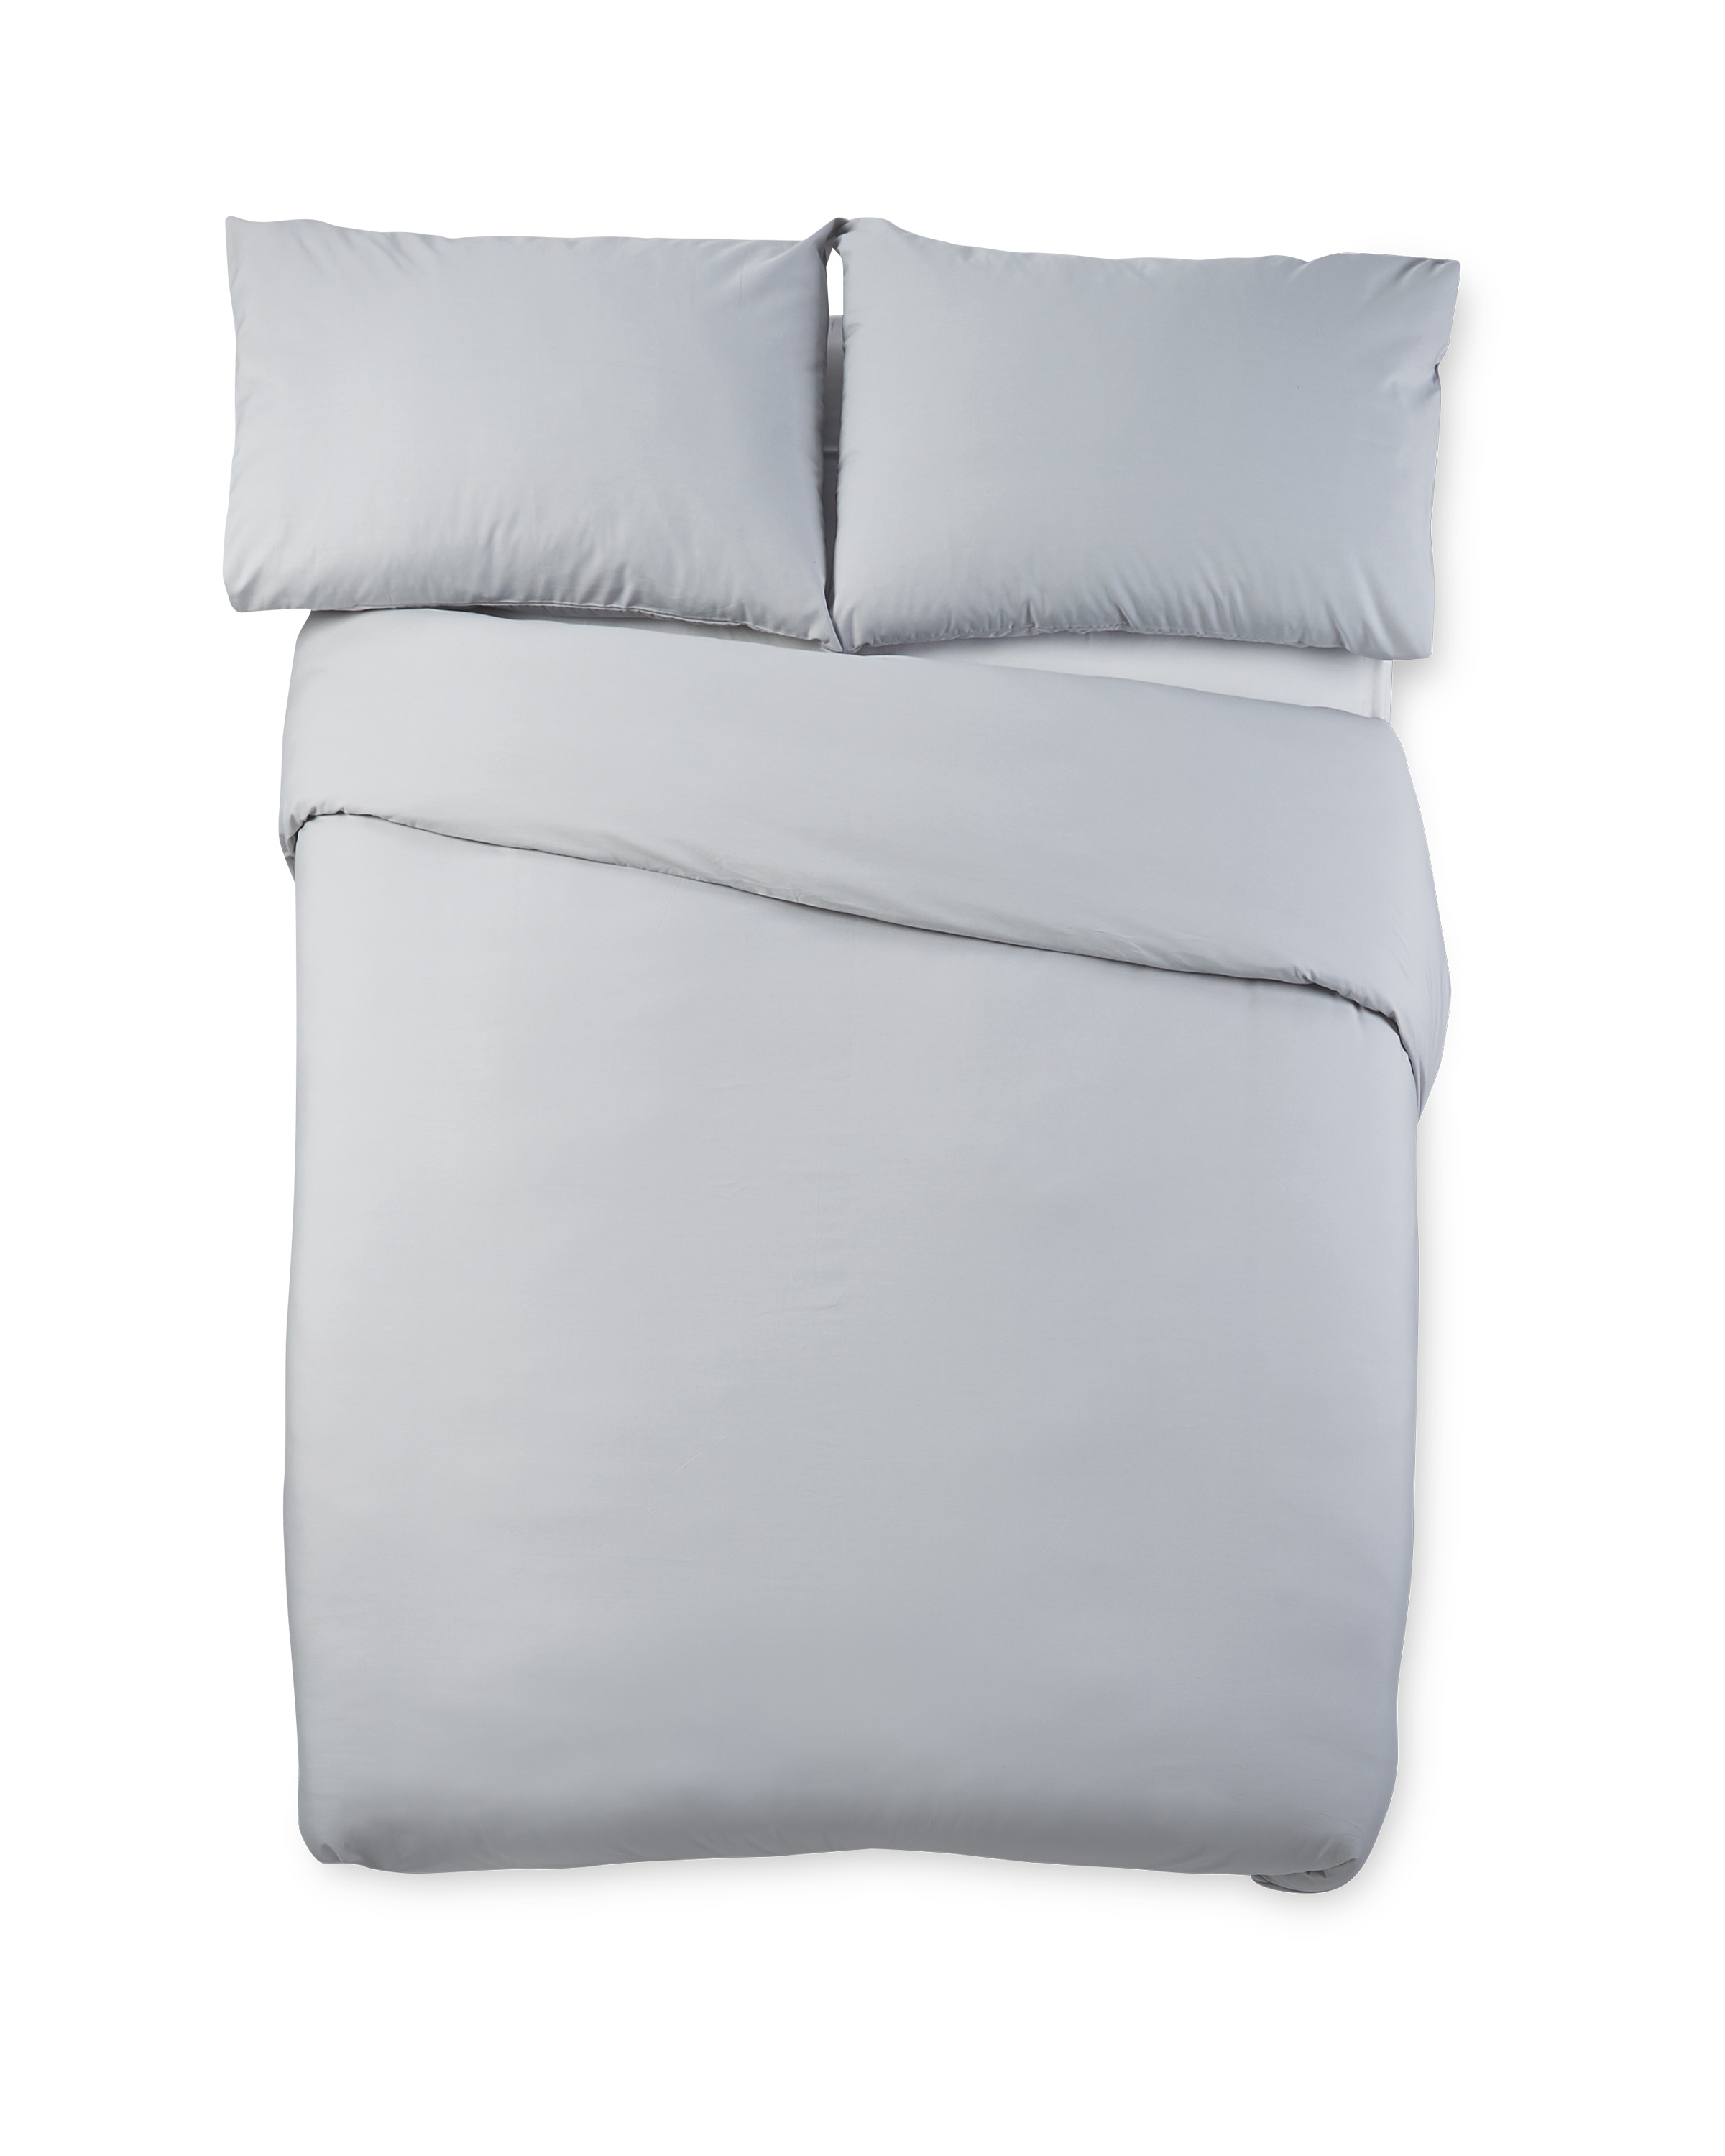 Grey Cooling Super King Duvet Set Aldi Uk, Grey Super King Bed Sheets